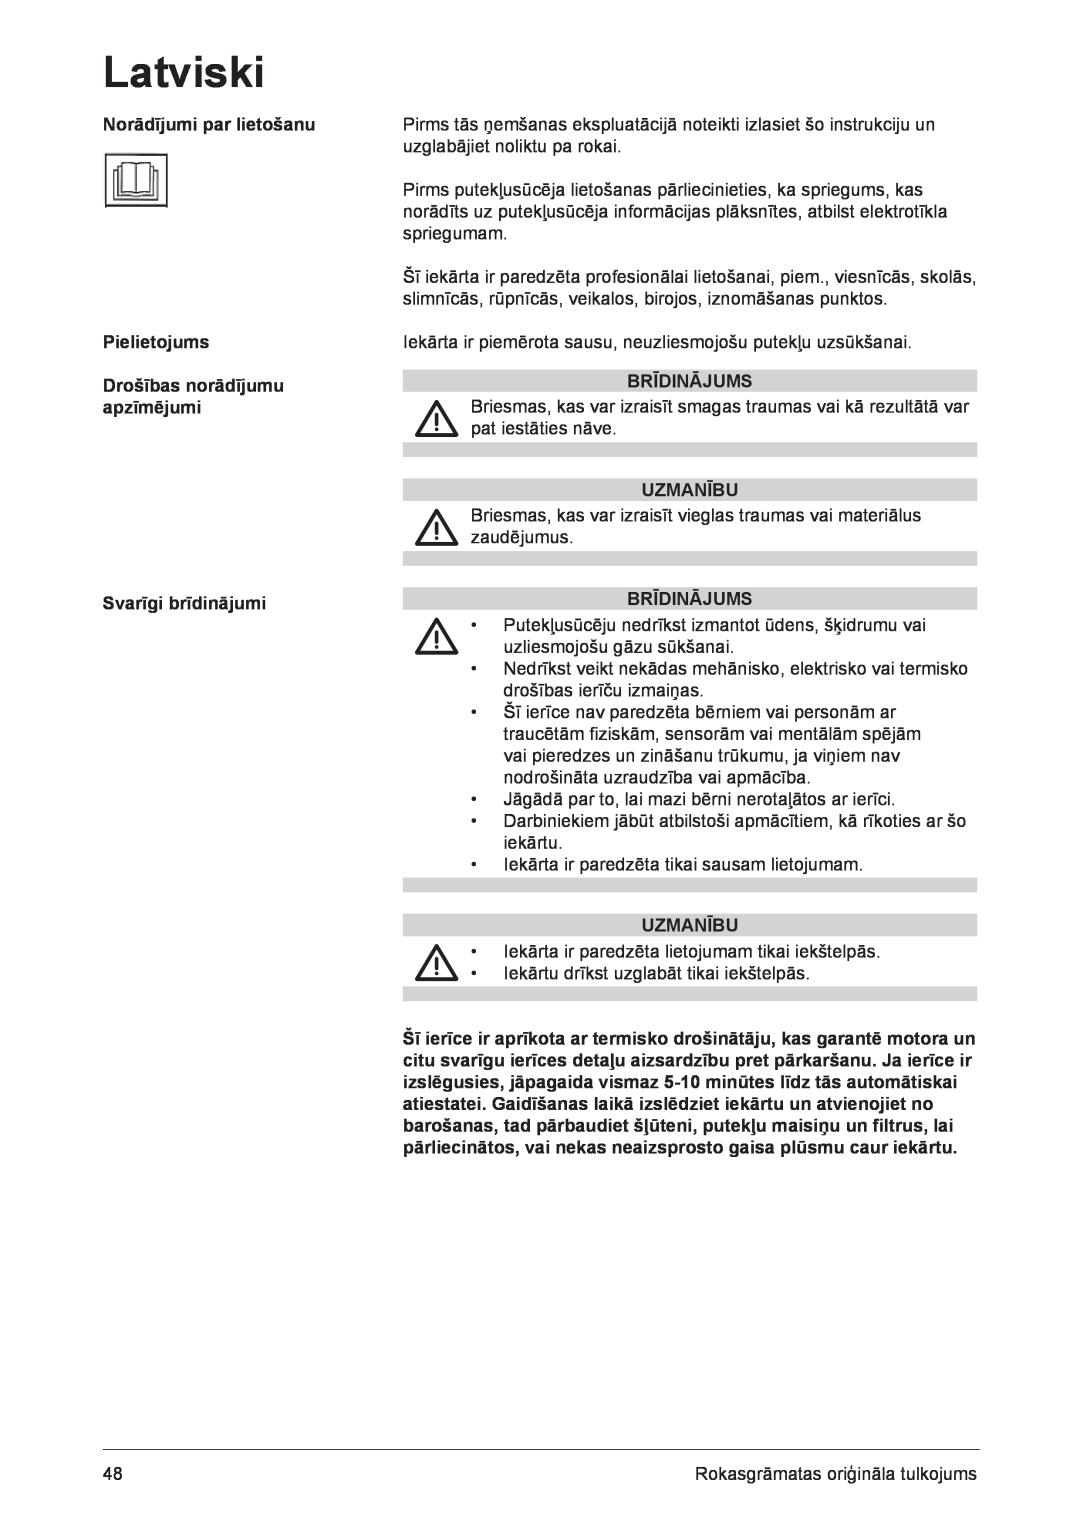 Nilfisk-ALTO GD 1000 Norādījumi par lietošanu Pielietojums, Drošības norādījumu apzīmējumi, Svarīgi brīdinājumi, Uzmanību 